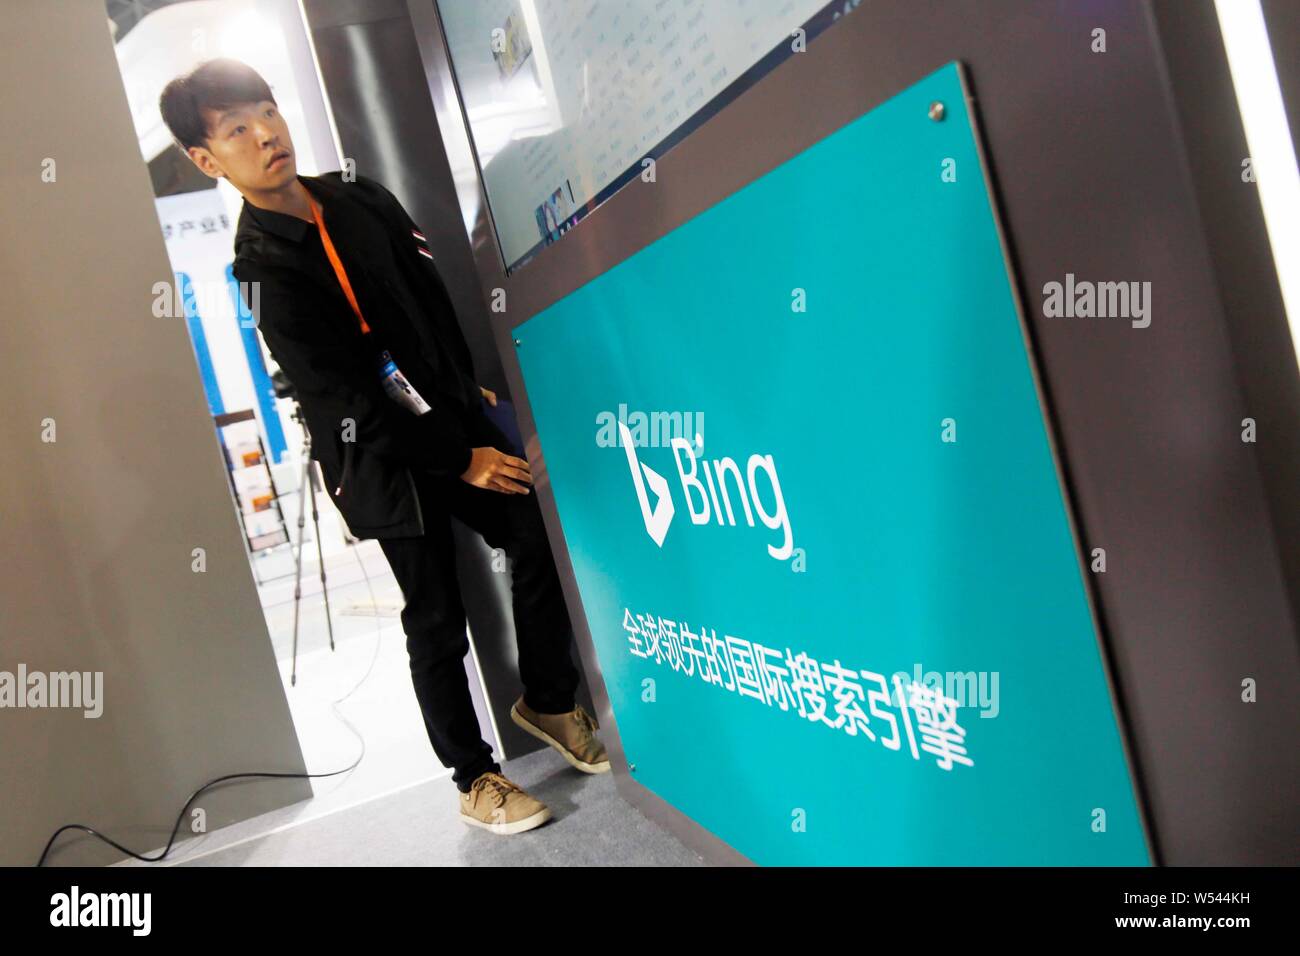 --FILE--Un empleado es visto en el soporte del motor de búsqueda bing de Microsoft Corporation durante una exposición en Shanghai, China, 20 de abril de 2017. Micr Foto de stock